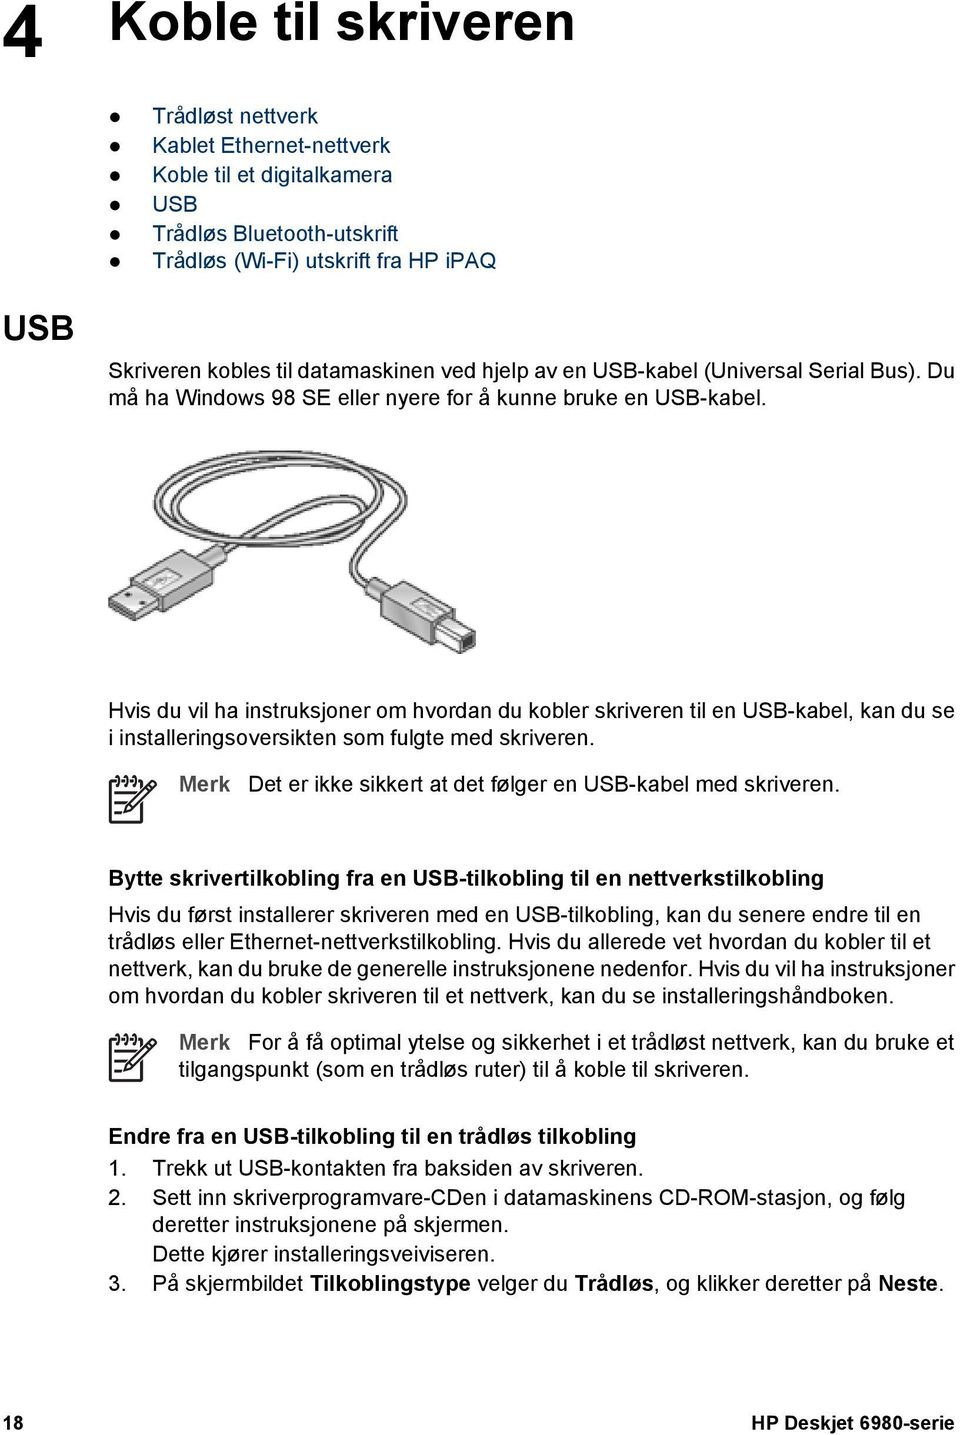 Hvis du vil ha instruksjoner om hvordan du kobler skriveren til en USB-kabel, kan du se i installeringsoversikten som fulgte med skriveren.